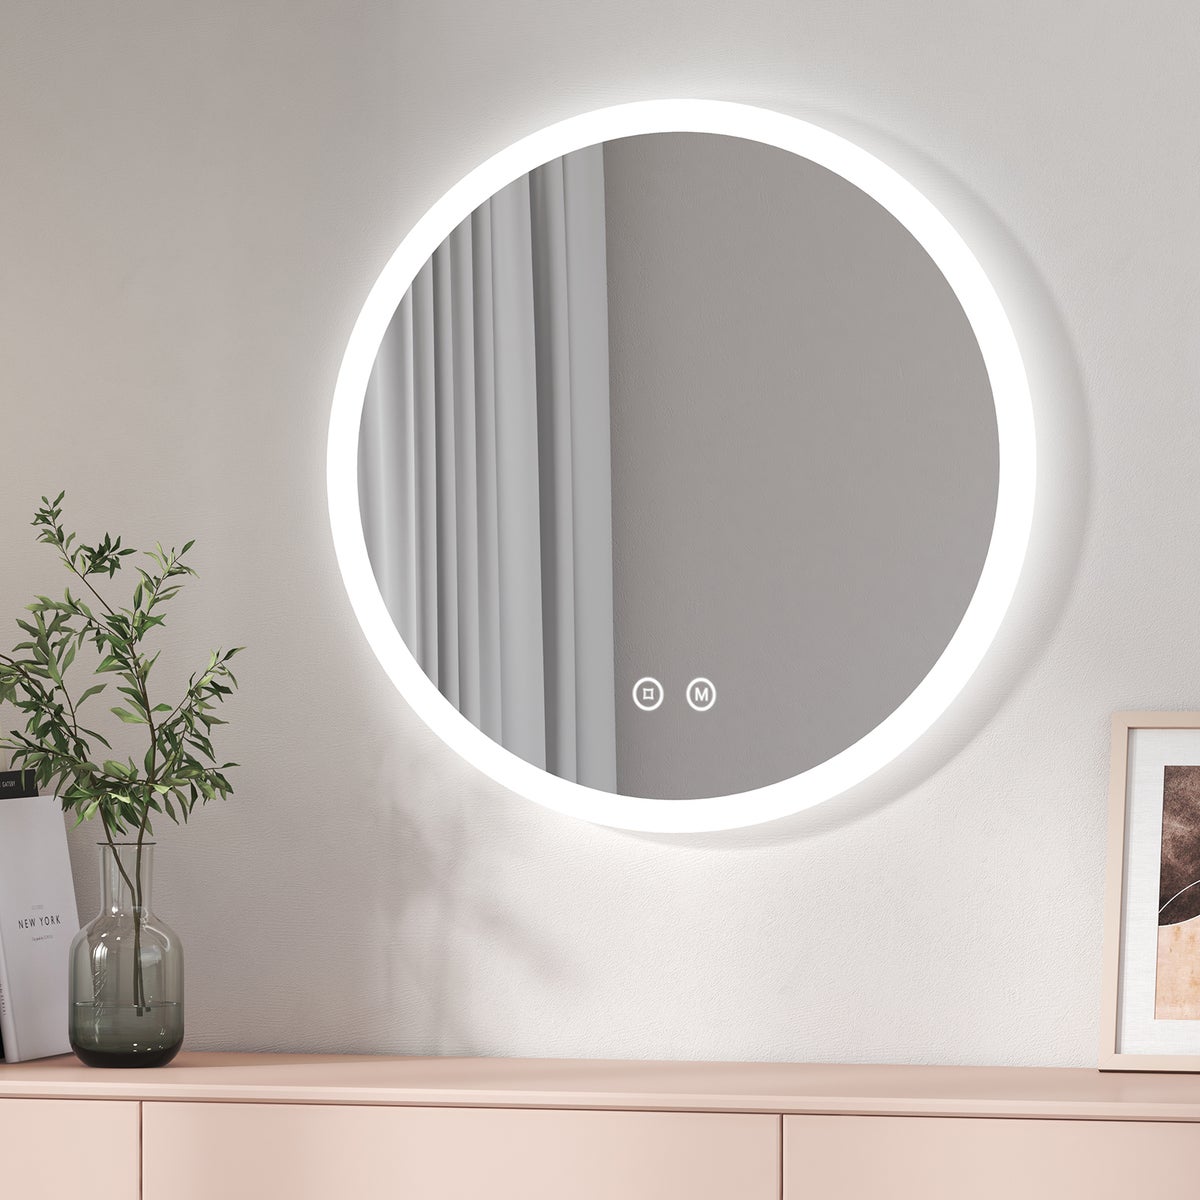 EMKE Badspiegel mit Beleuchtung Rund Badezimmerspiegel (ф70cm, Warmweißes/Kaltweißes/Neutrales Licht, Touch-Schalter, Beschlagfrei, Power-Off-Memory-Funktion)